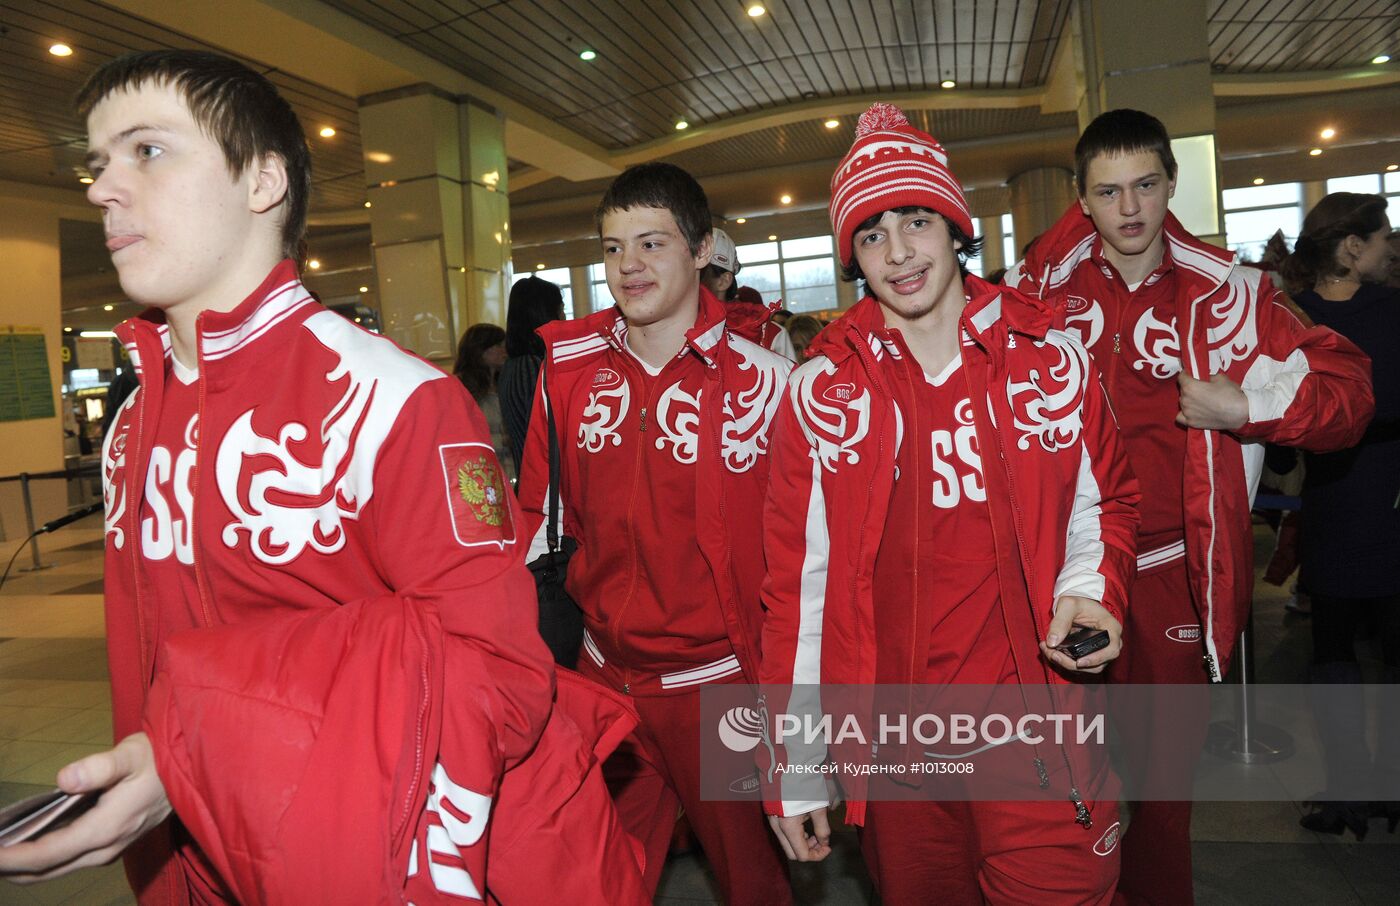 Проводы делегации России на I зимние юношеские Олимпийские игры